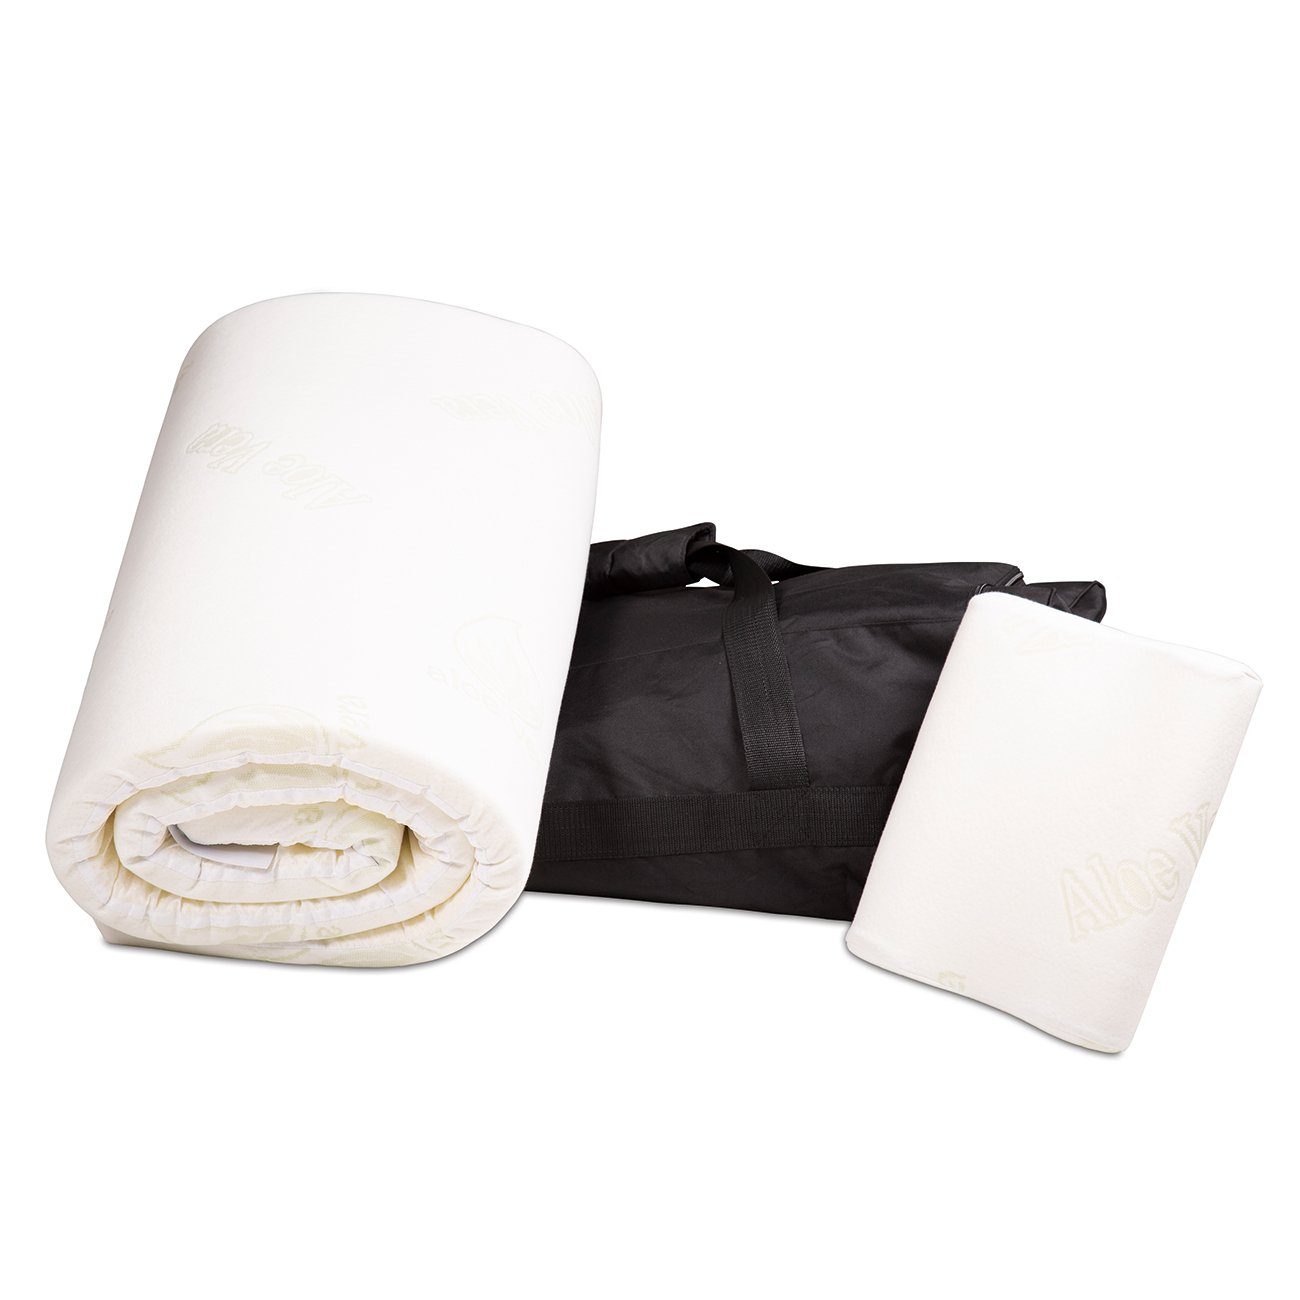 Matratzenauflage Reise-Set »Aloe Vera« Bestschlaf, inklusive Kopfkissen und Transporttasche